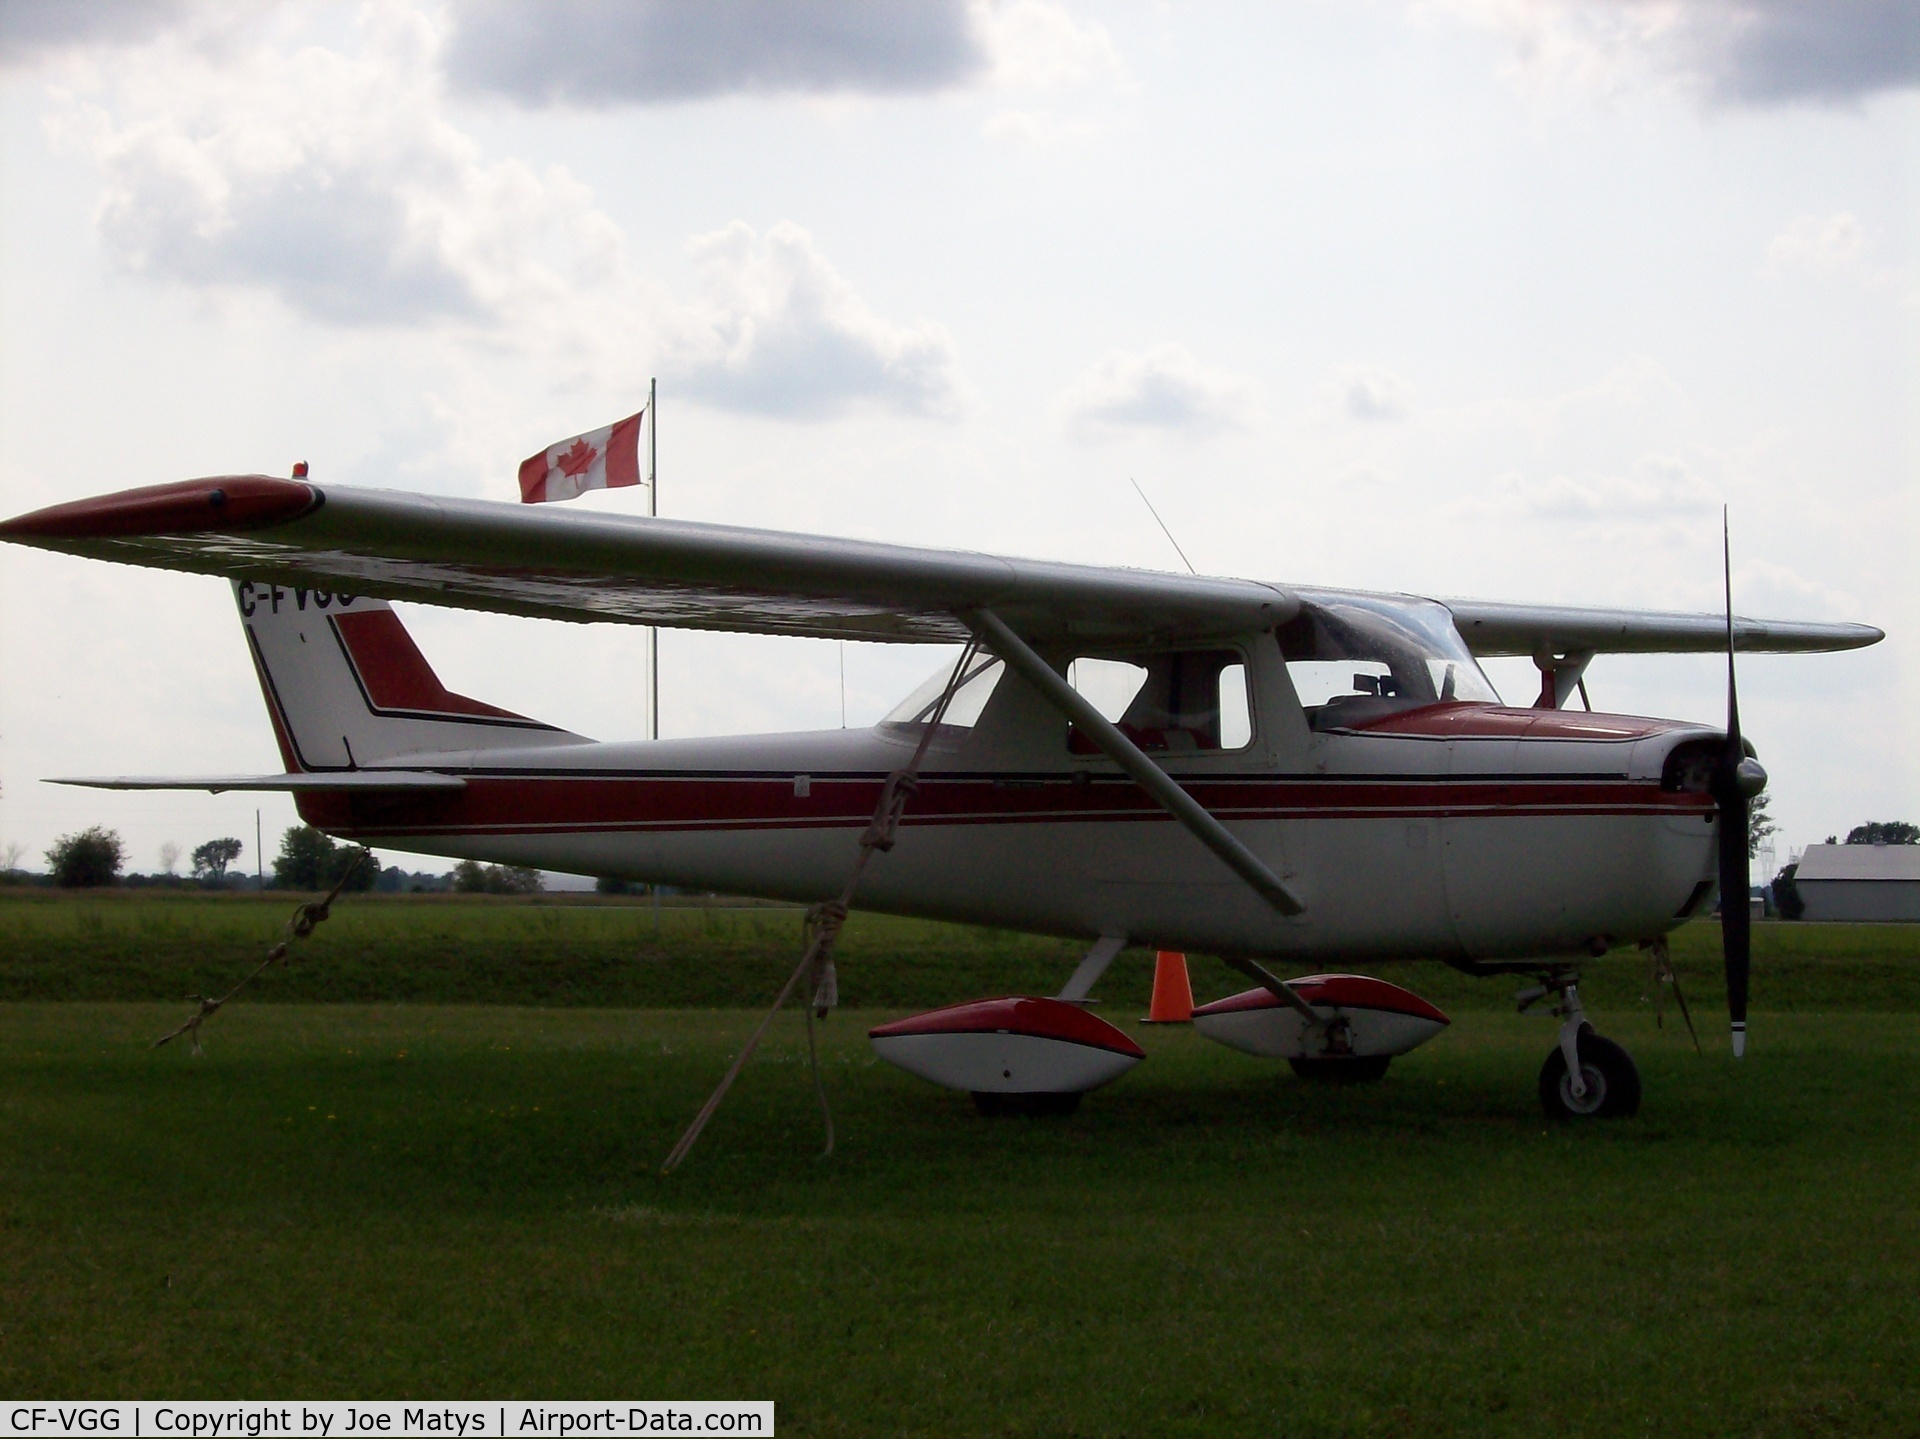 CF-VGG, 1967 Cessna 150G C/N 15065754, Pic @ Pivate Field